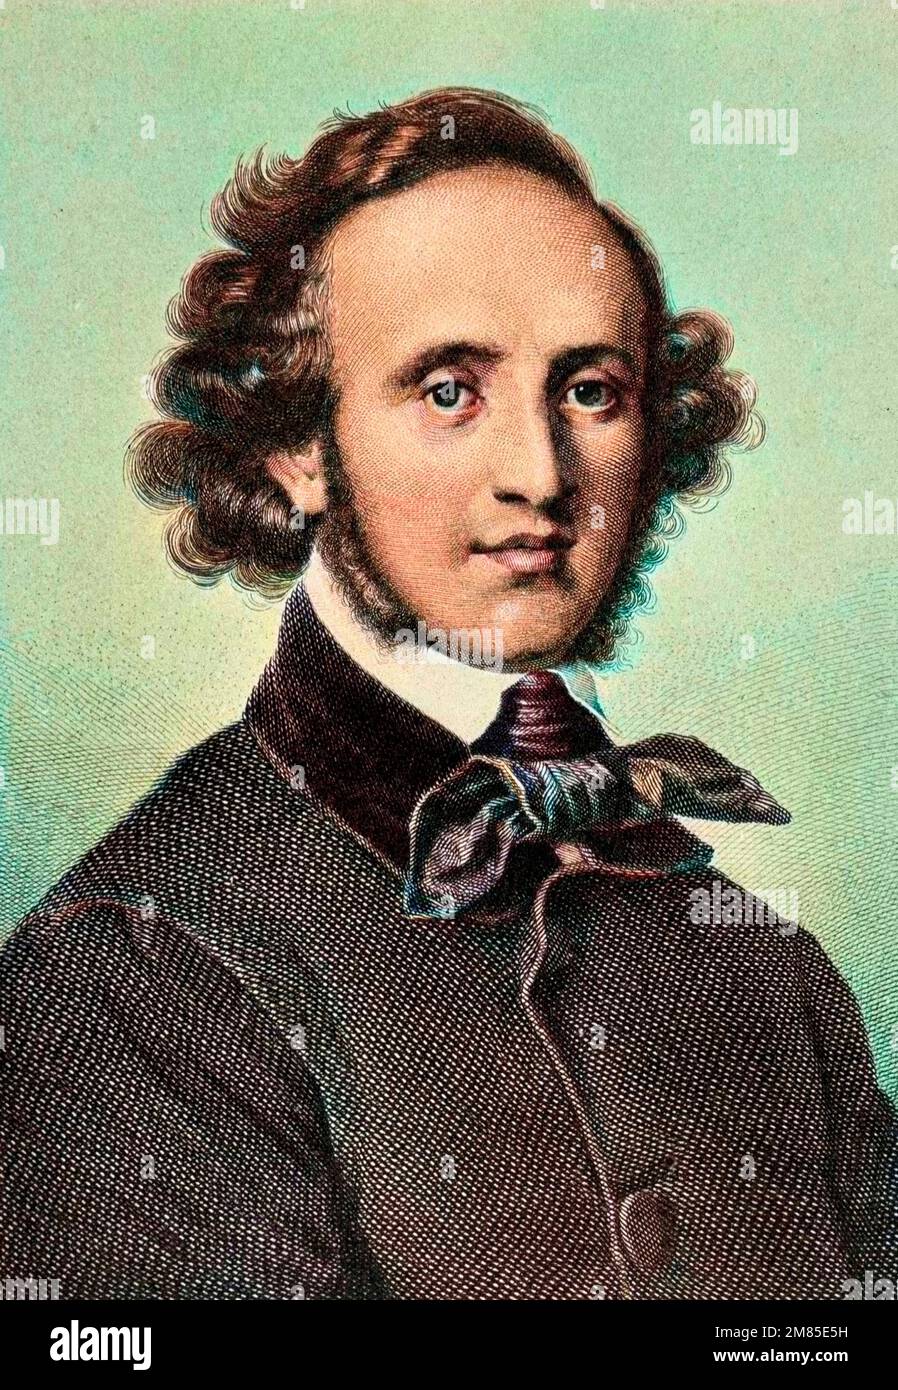 Portrait de Felix Mendelssohn Bartholdy (1809-1847), chef d'orchestre et compositeur allemand. Stock Photo